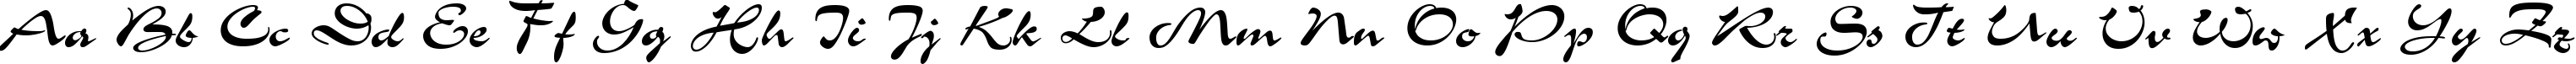 Пример написания английского алфавита шрифтом CorridaC